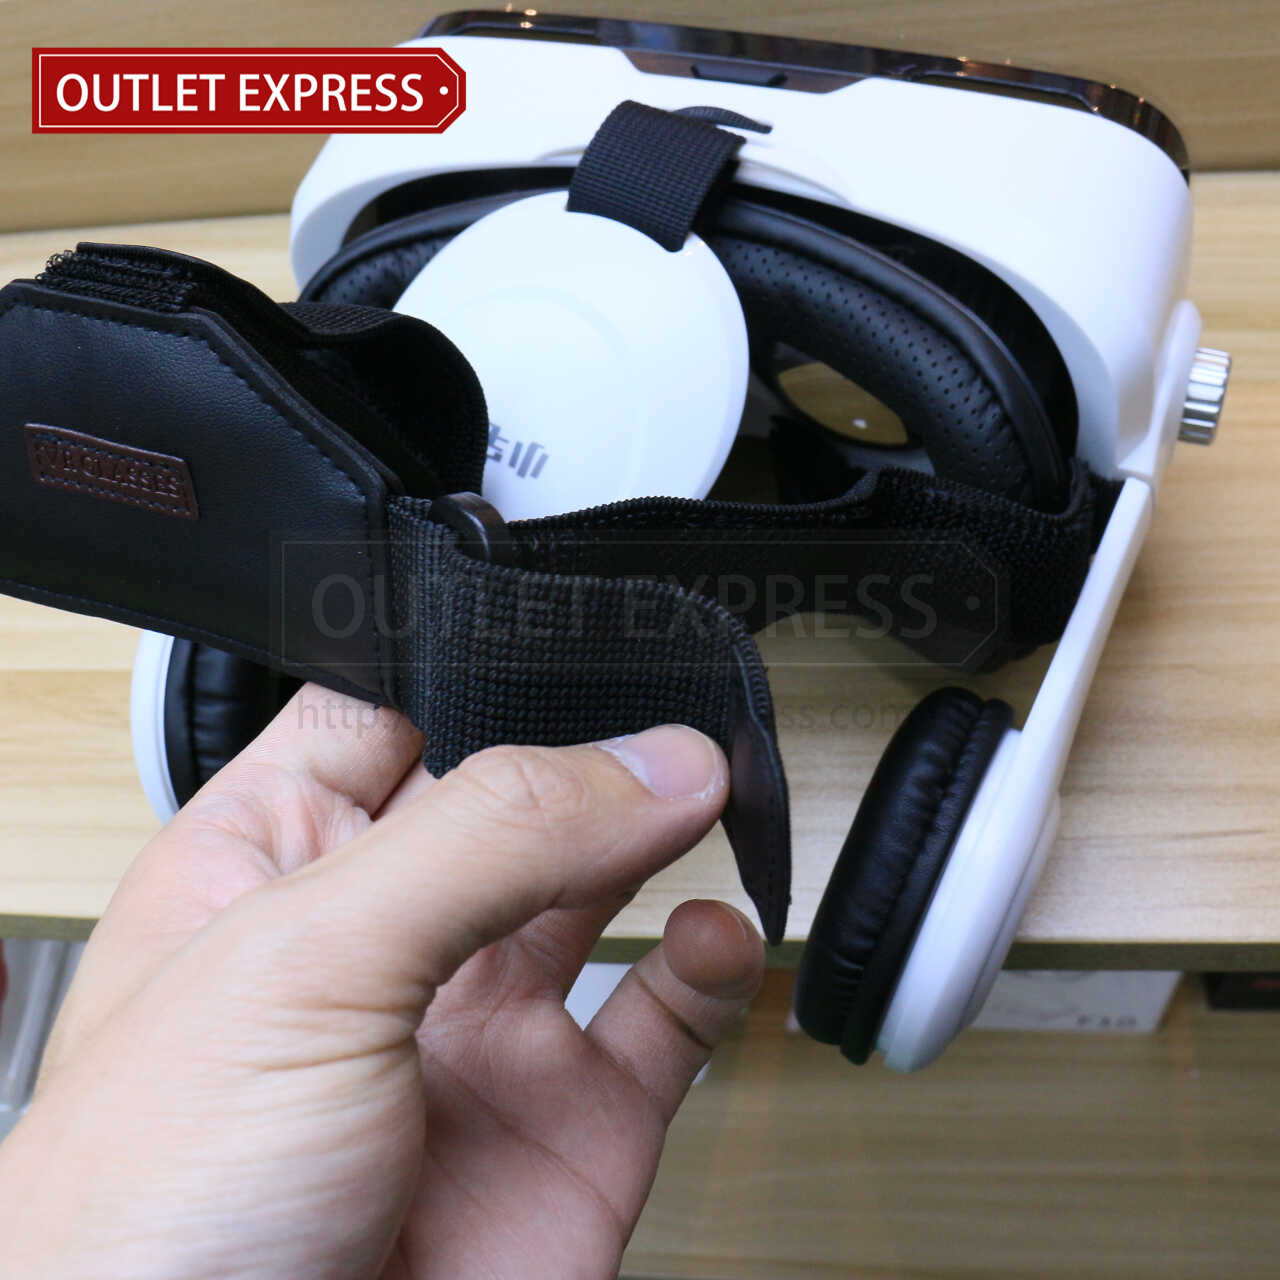 小宅魔鏡Z4 VR虛擬實境眼鏡- Outlet Express HK生活百貨城實拍相片